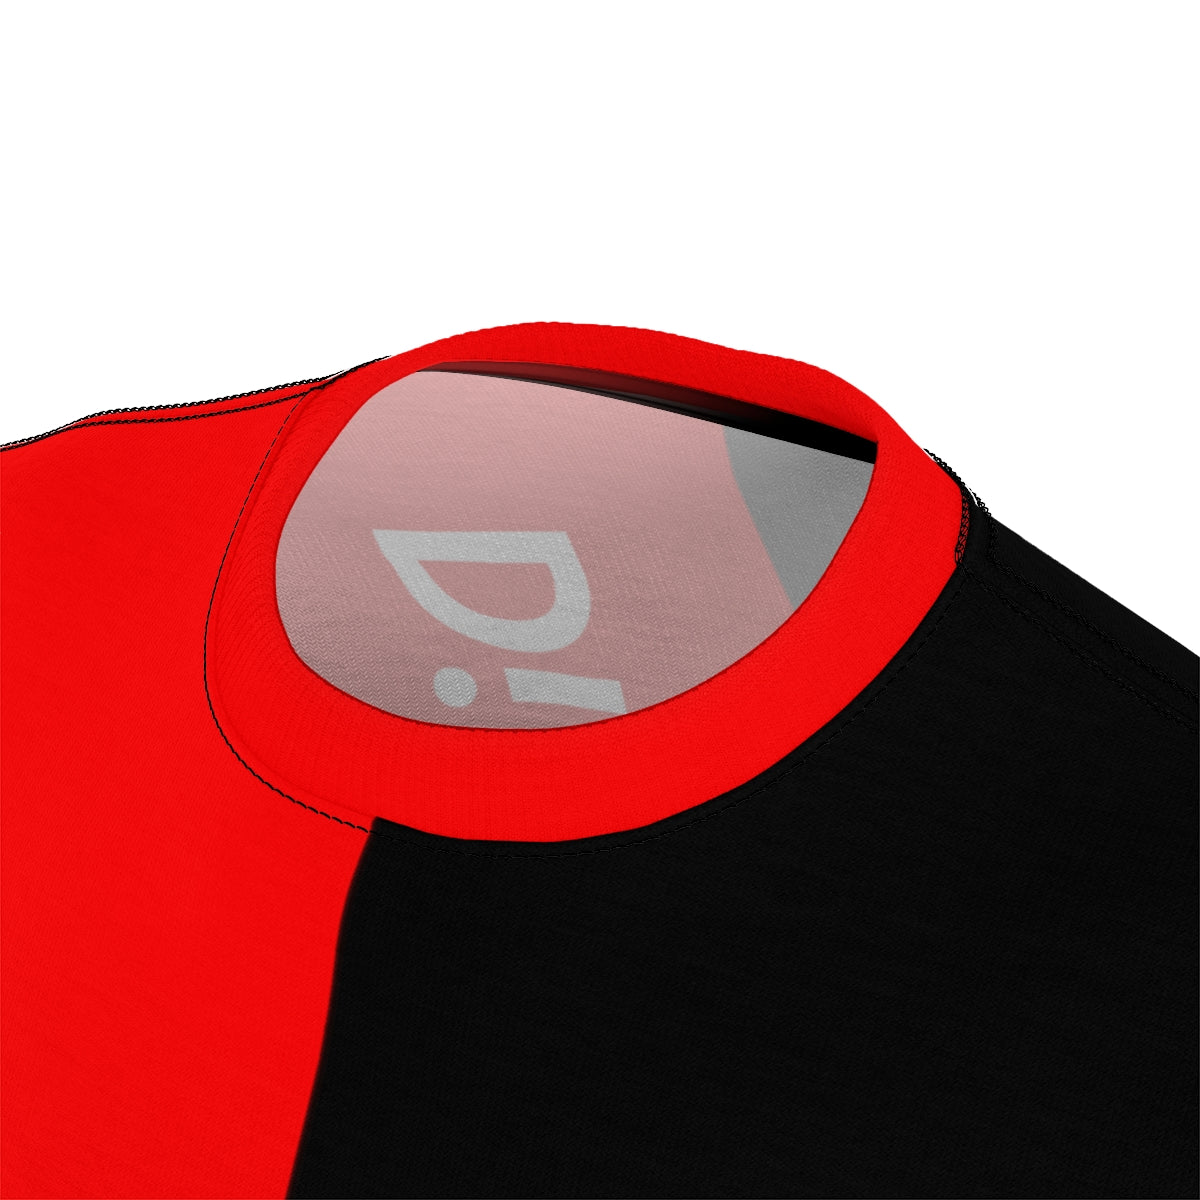 DBG - Dirty Boat Guy (Black / Red)